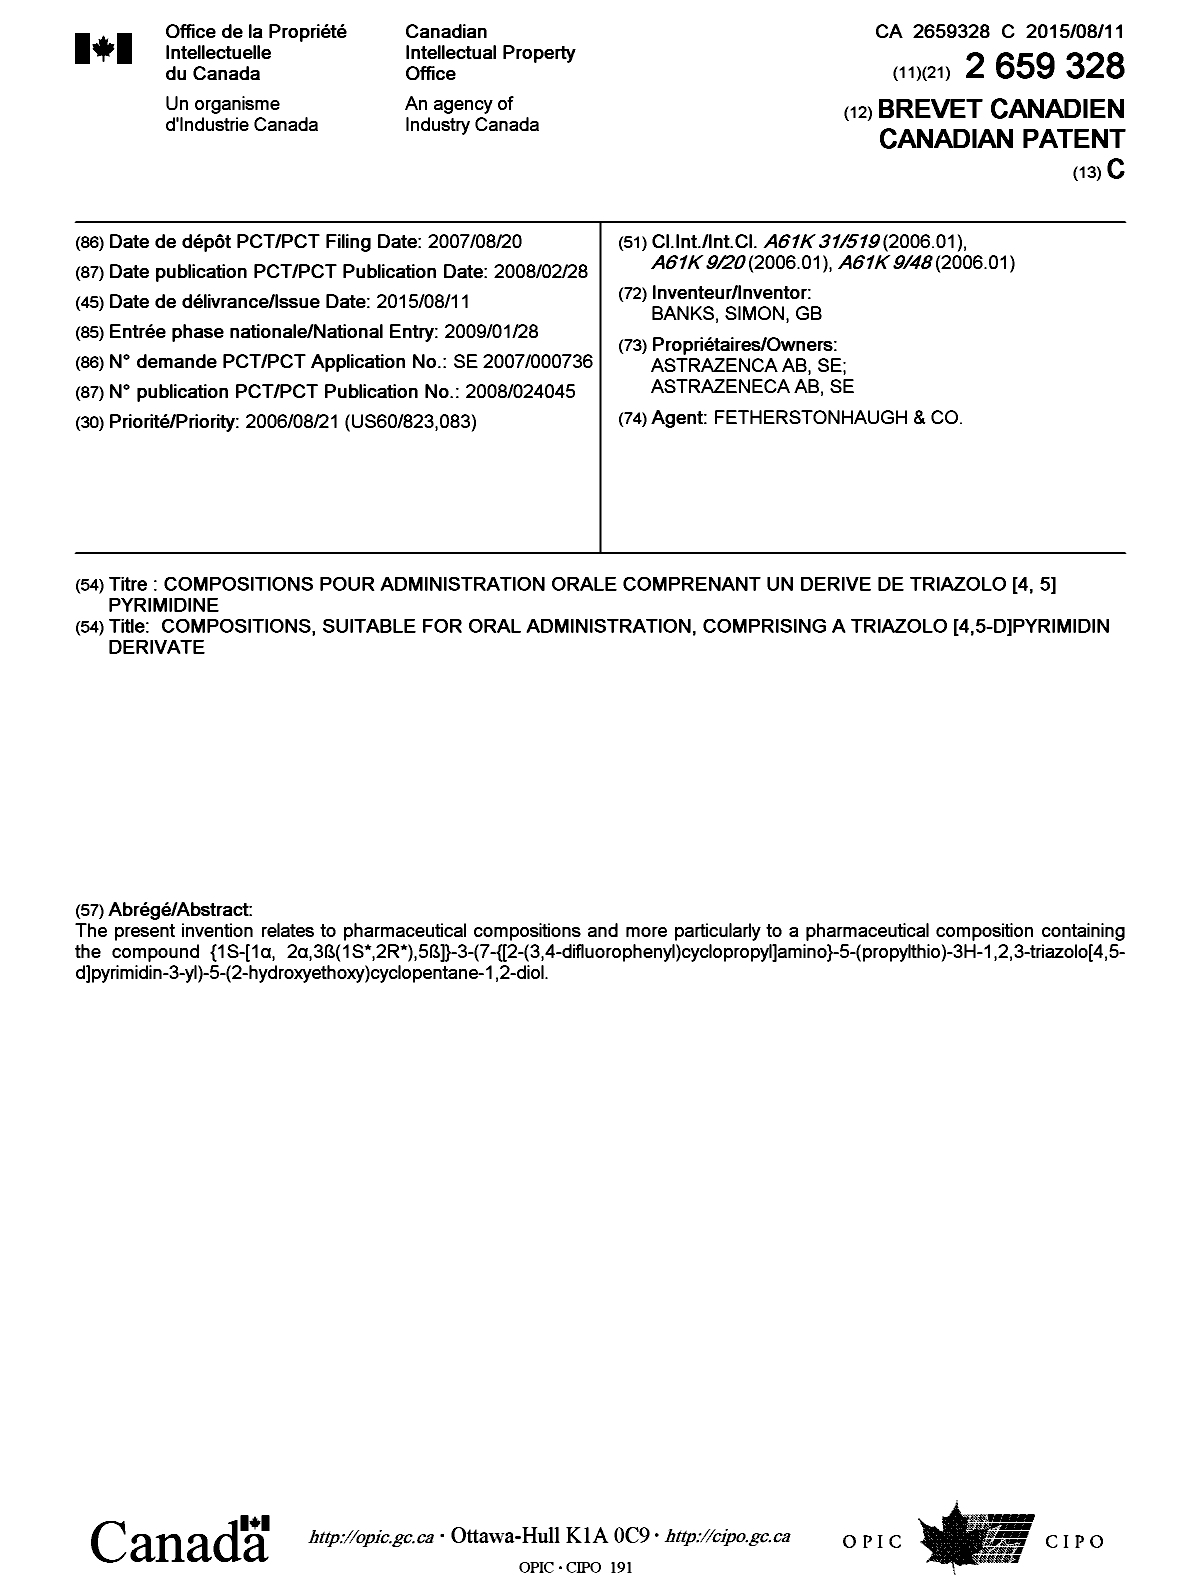 Document de brevet canadien 2659328. Page couverture 20141215. Image 1 de 1